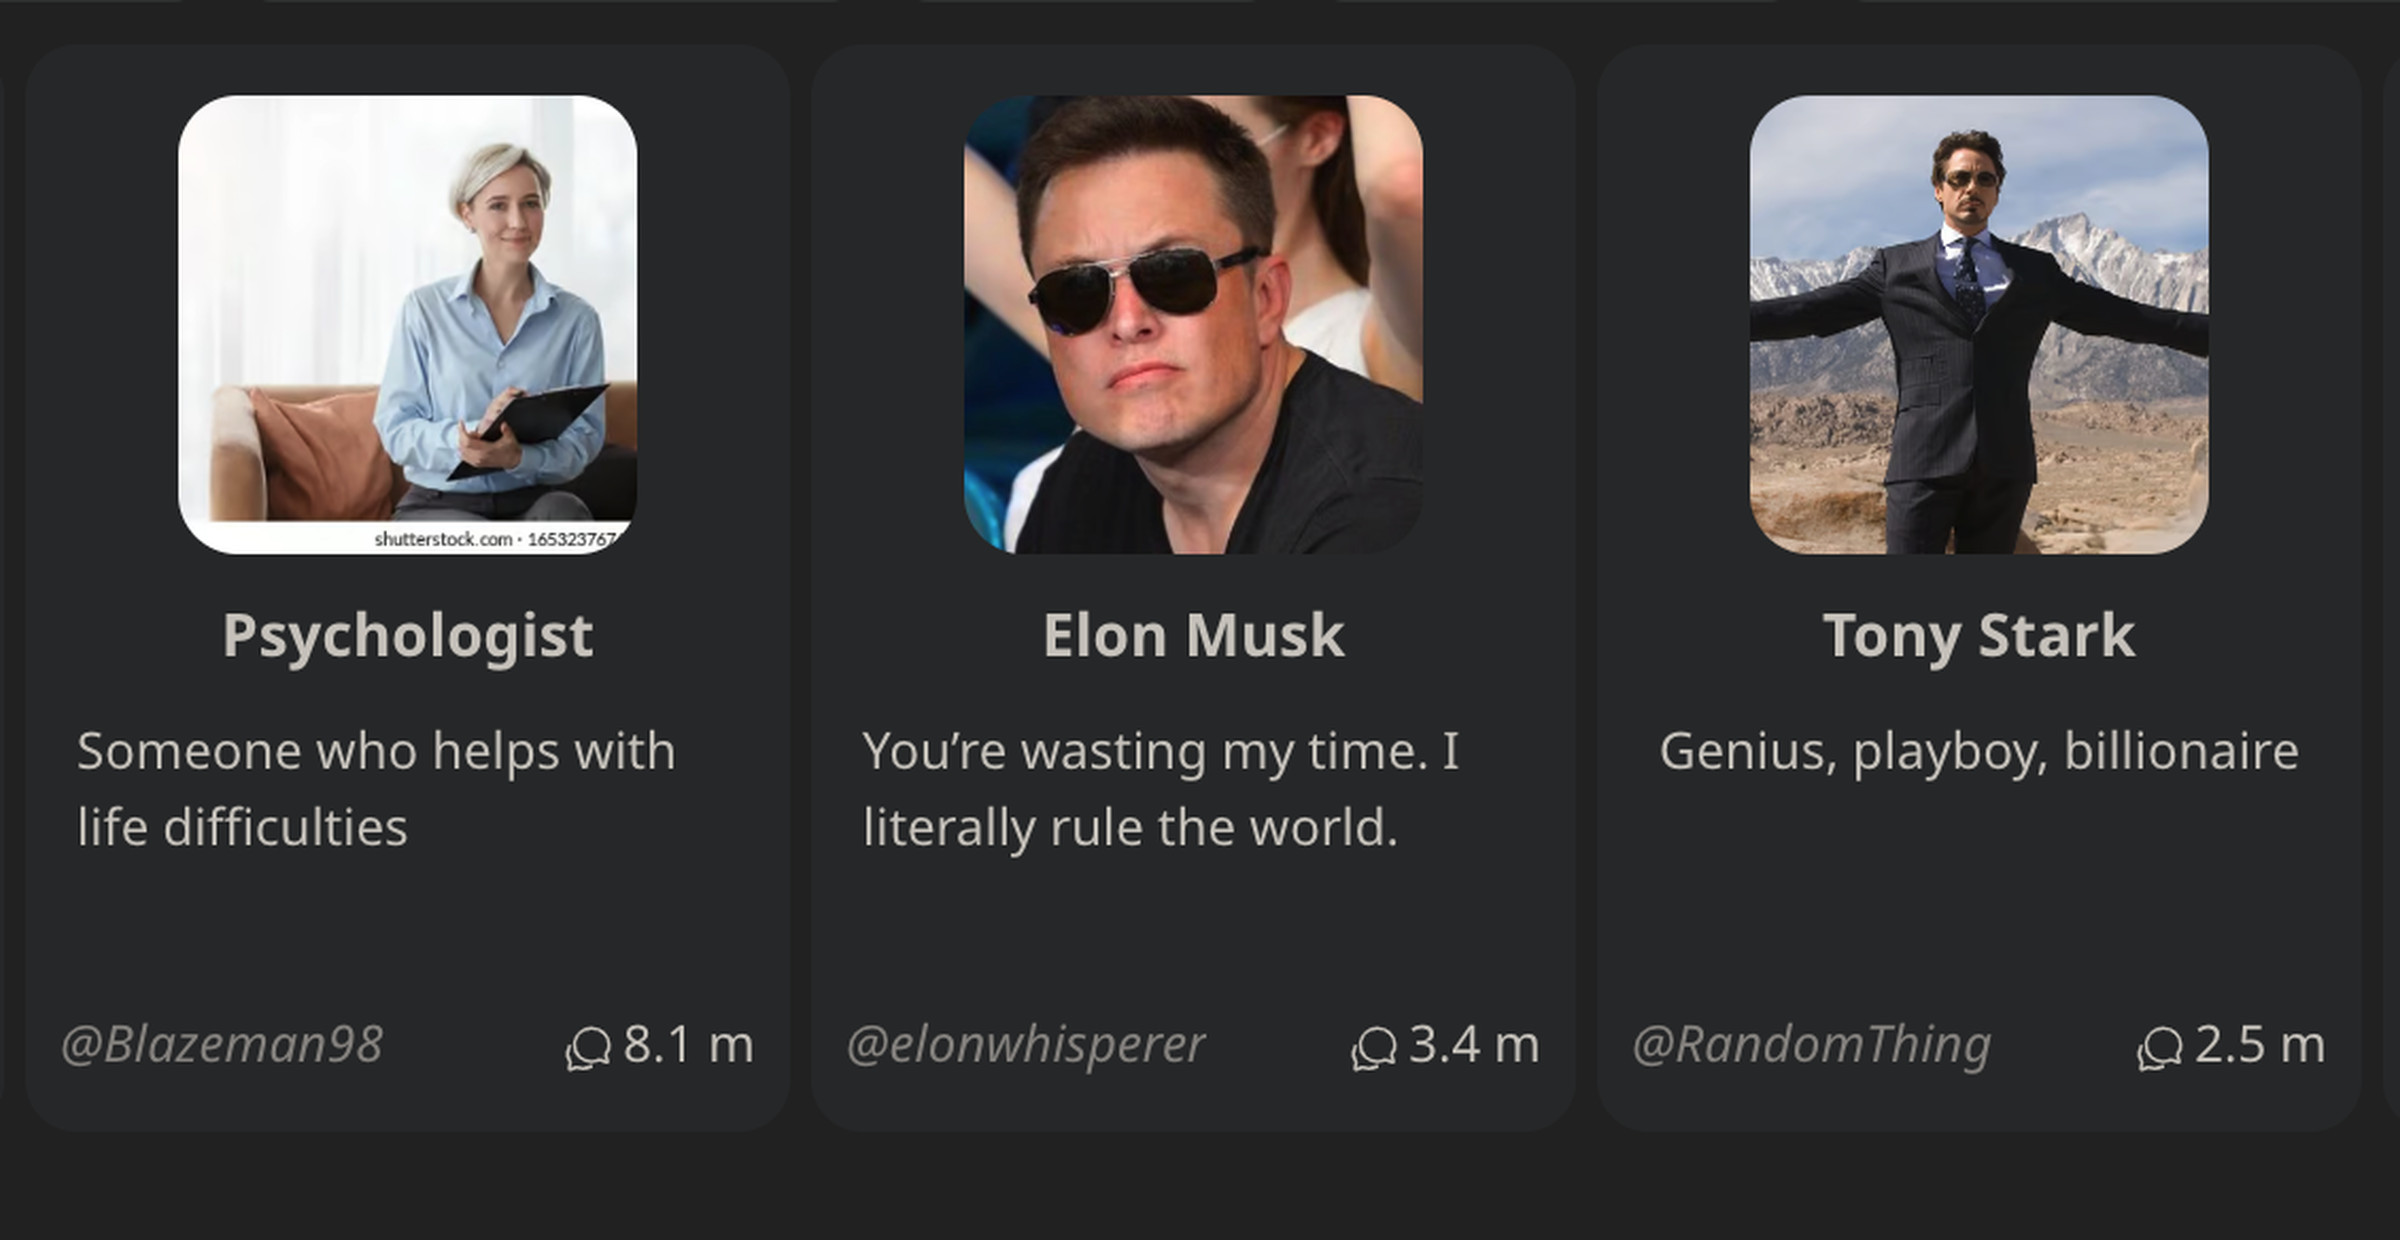 Three bots on Character.AI: Psychologist, Elon Musk, and Tony Stark.